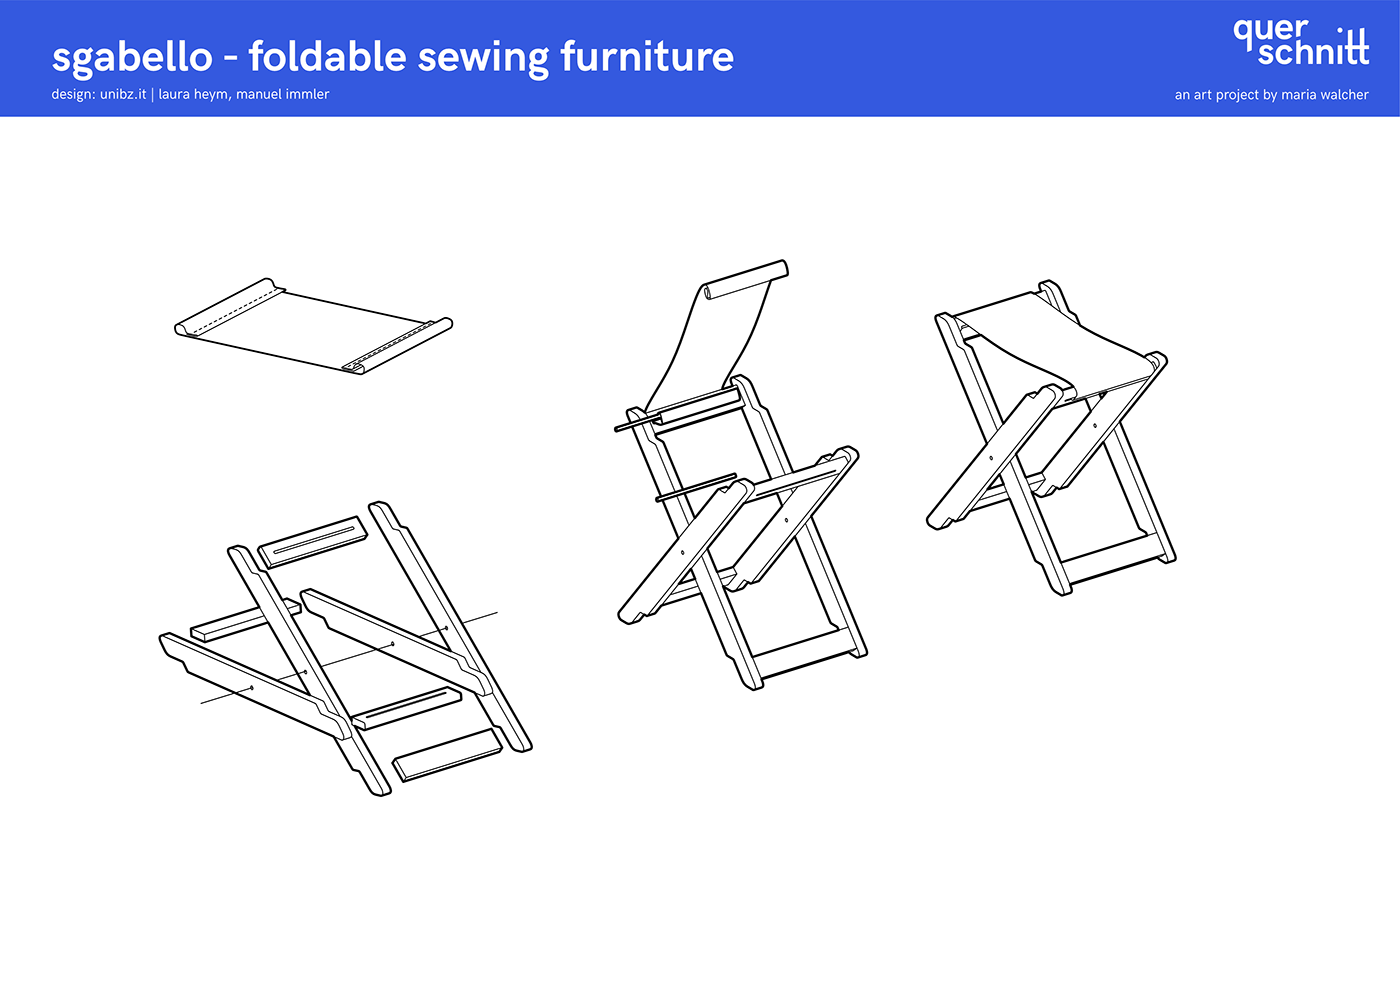 furniture Refugees open source Foldable social design eco design